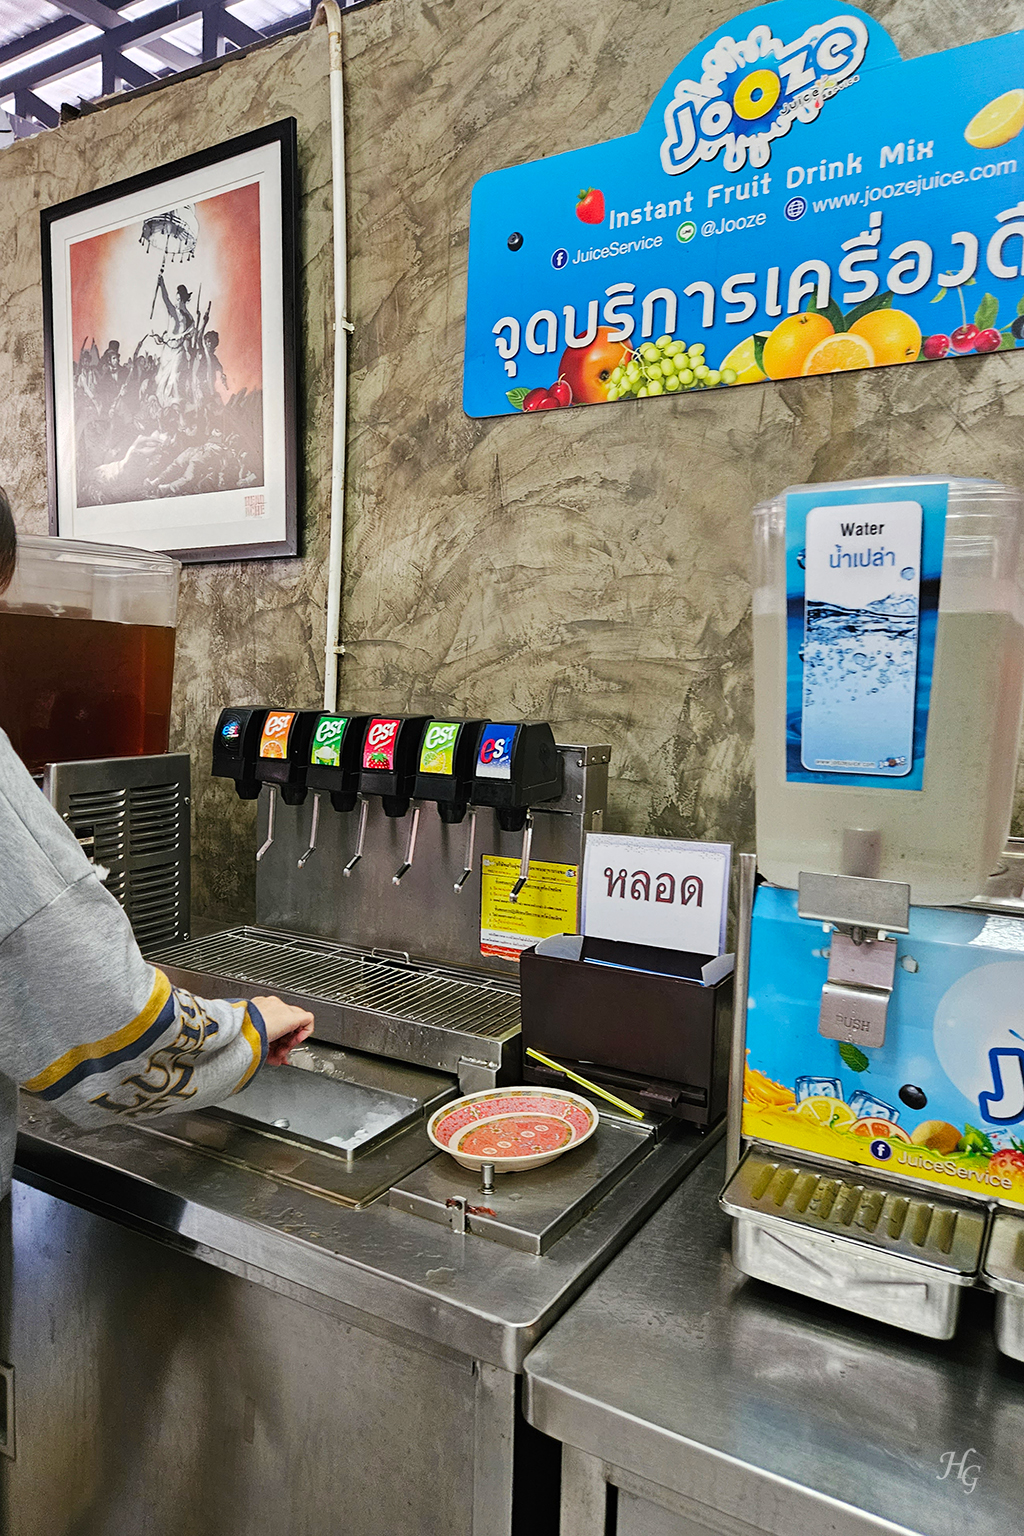 태국 방콕 무까타(หมูกระทะ) 맛집 띧만(ติดมันส์ / Tid Munz Buffet) 음료수 코너